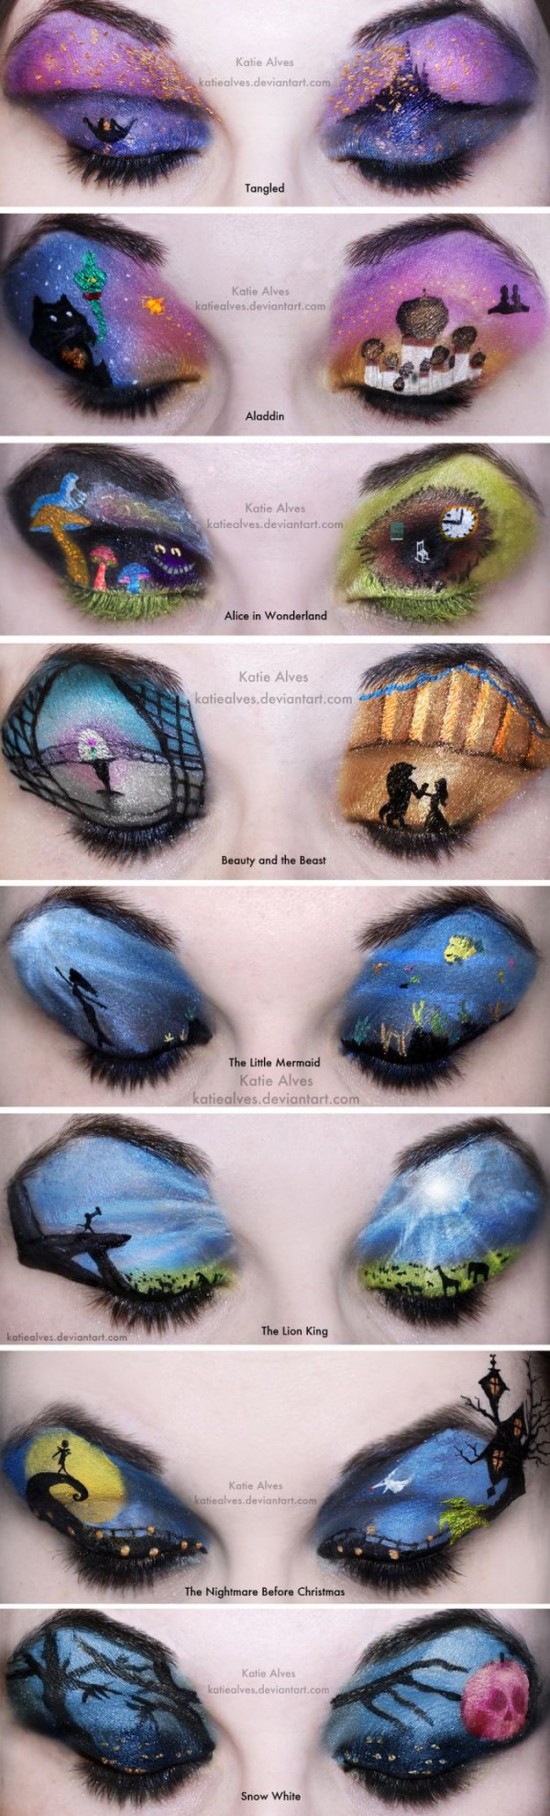 Eyelid-Art-and-Makeup-002